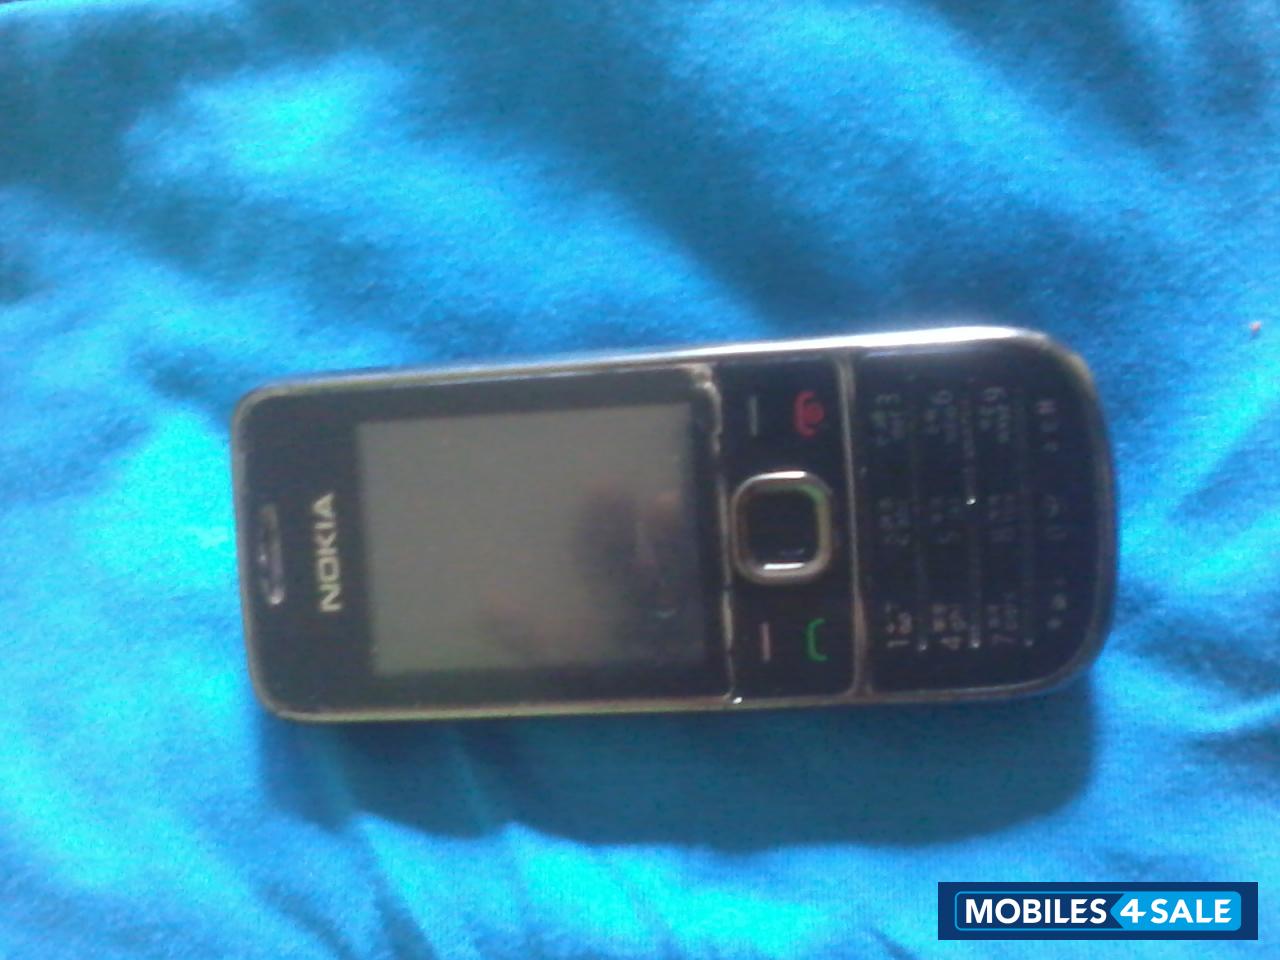 Black Nokia 2700c